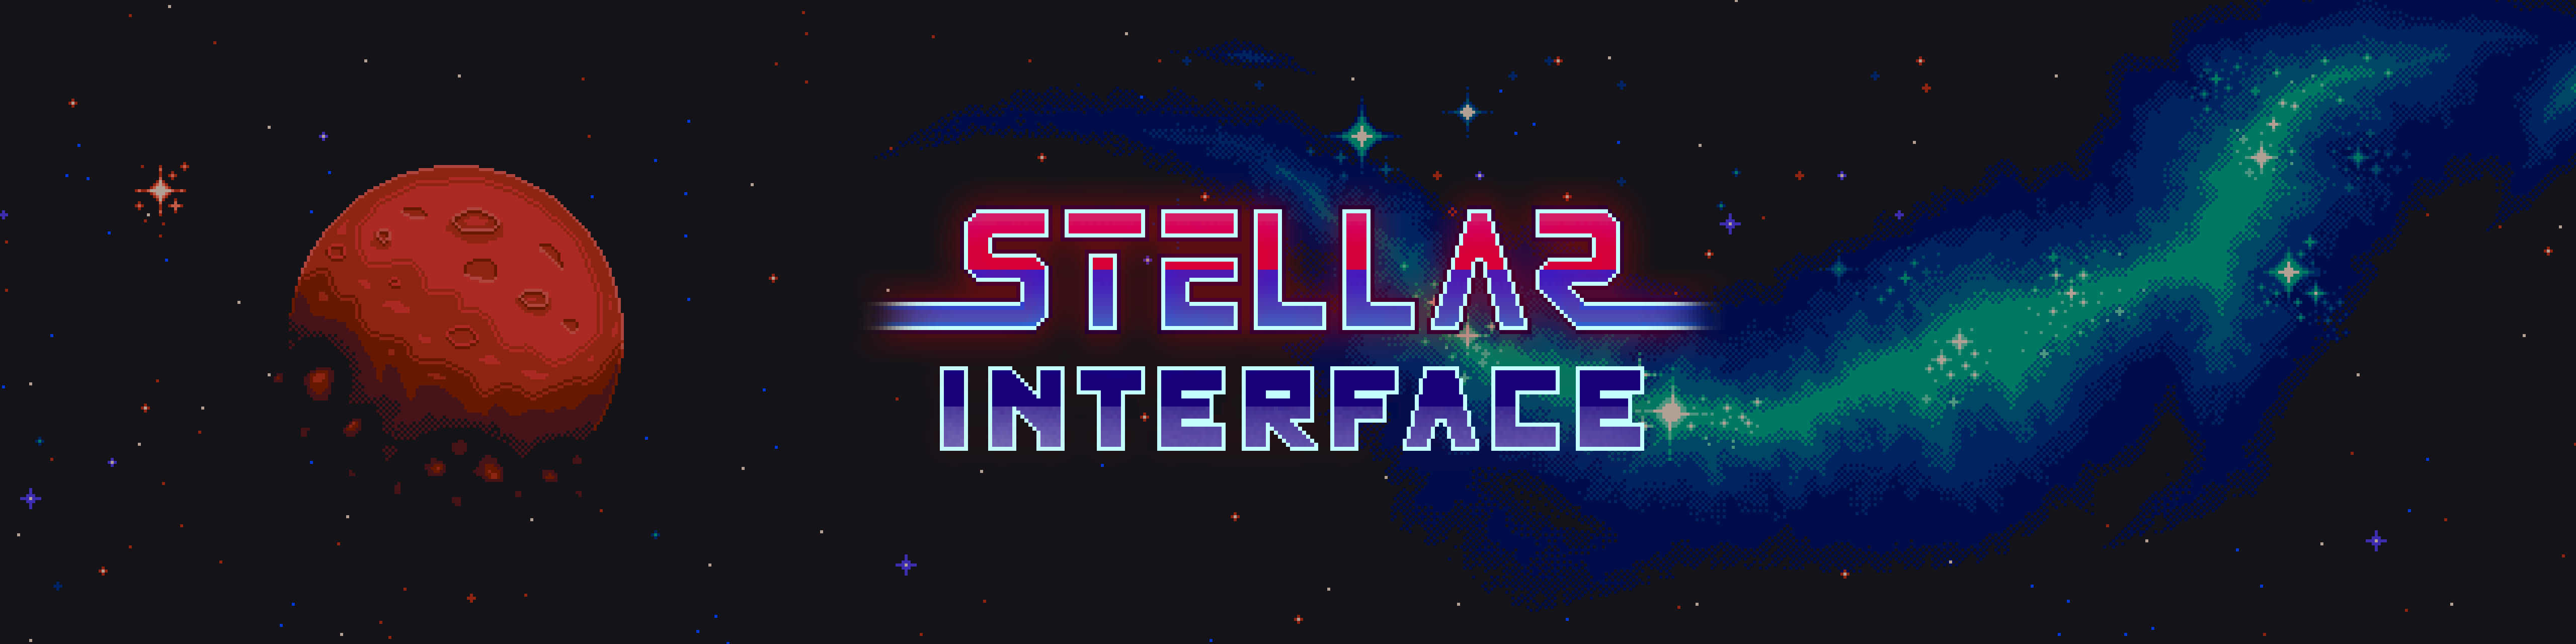 free for mac download Stellar Interface